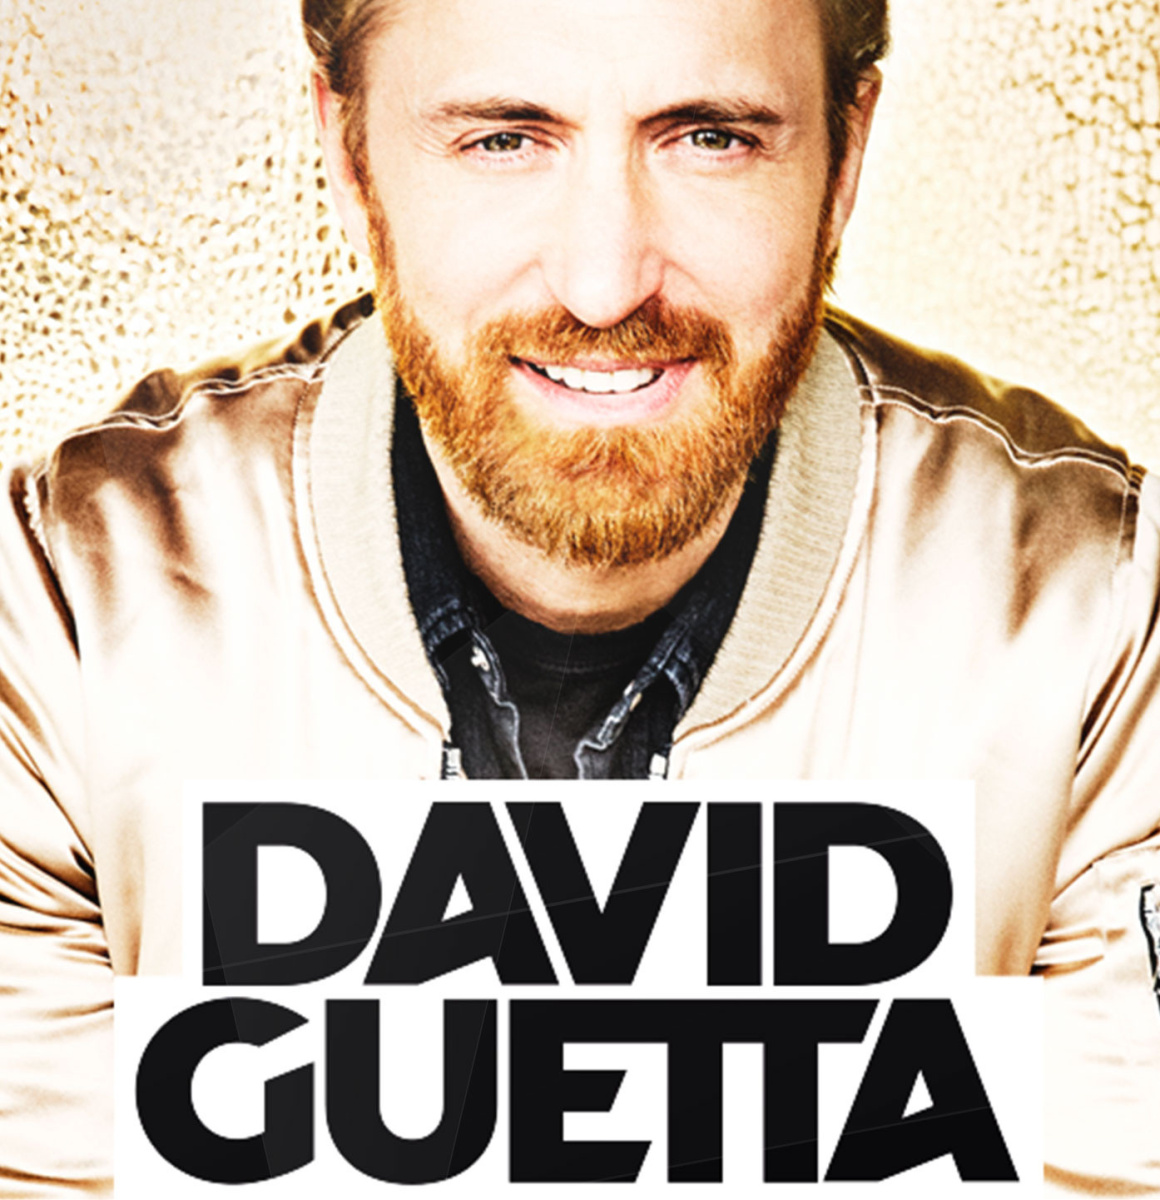 David Guetta at Paris Arena Bercy in January 2018 - Sortiraparis.com